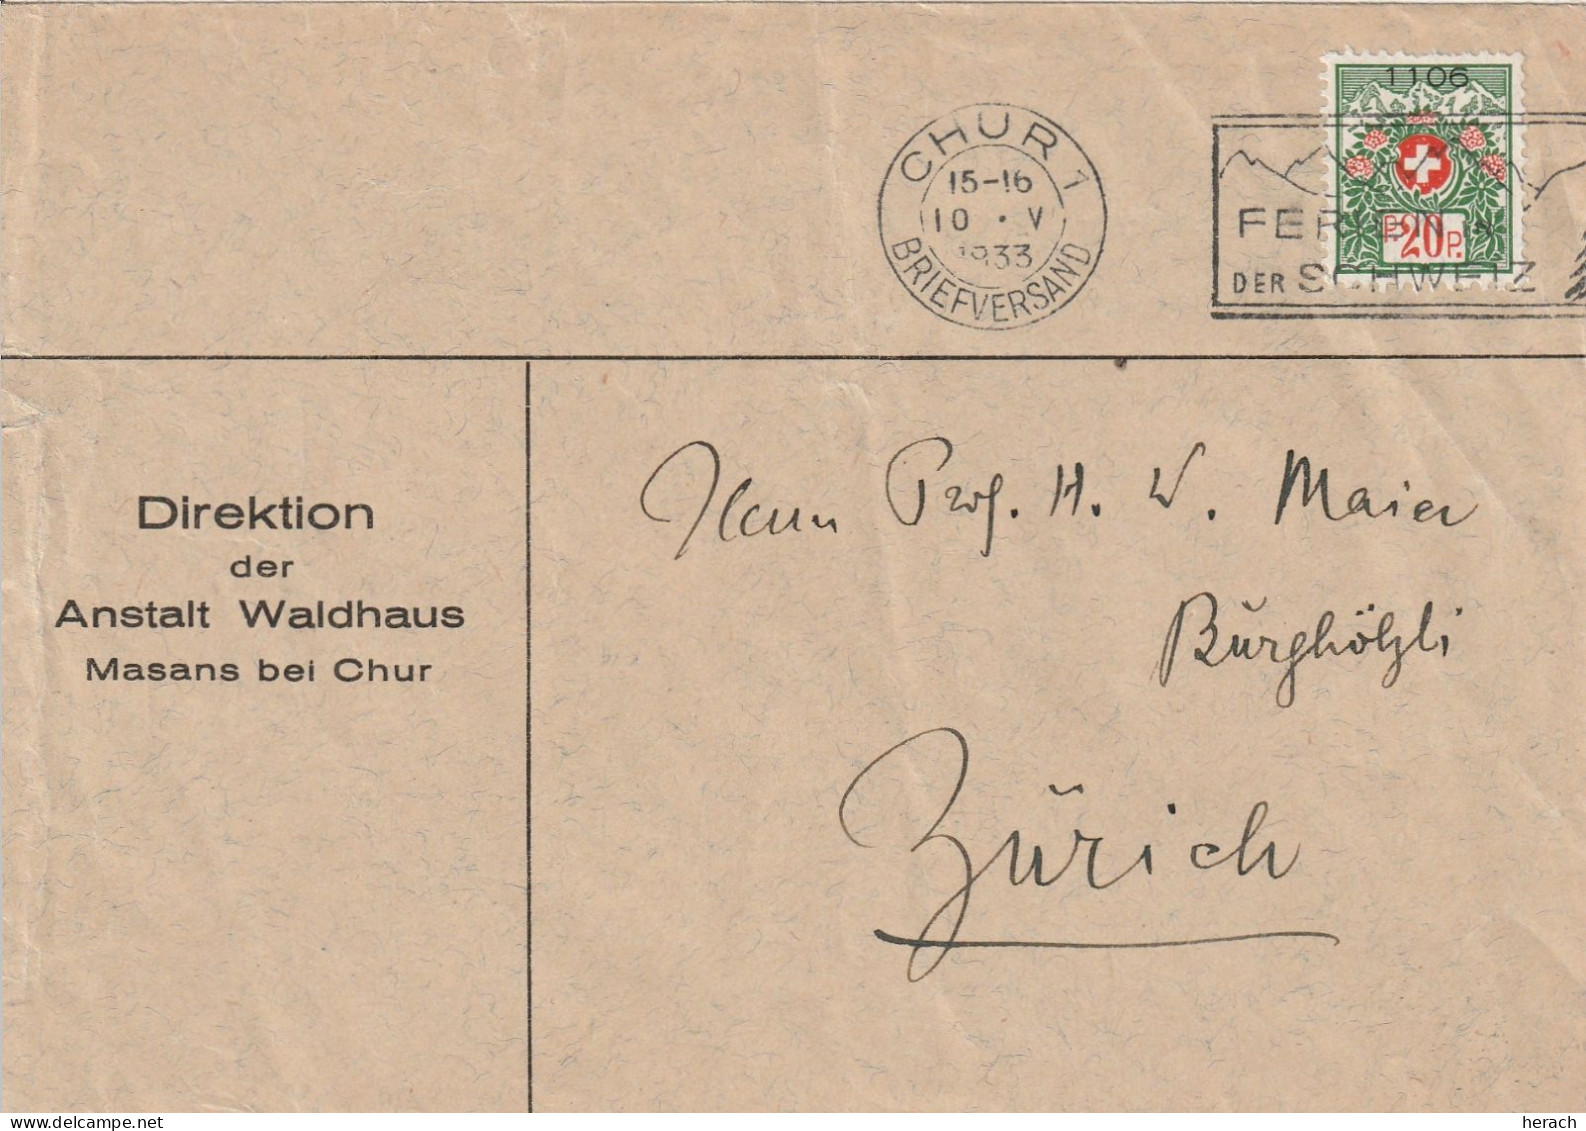 Suisse Lettre De Service Chur 1933 - Marcophilie